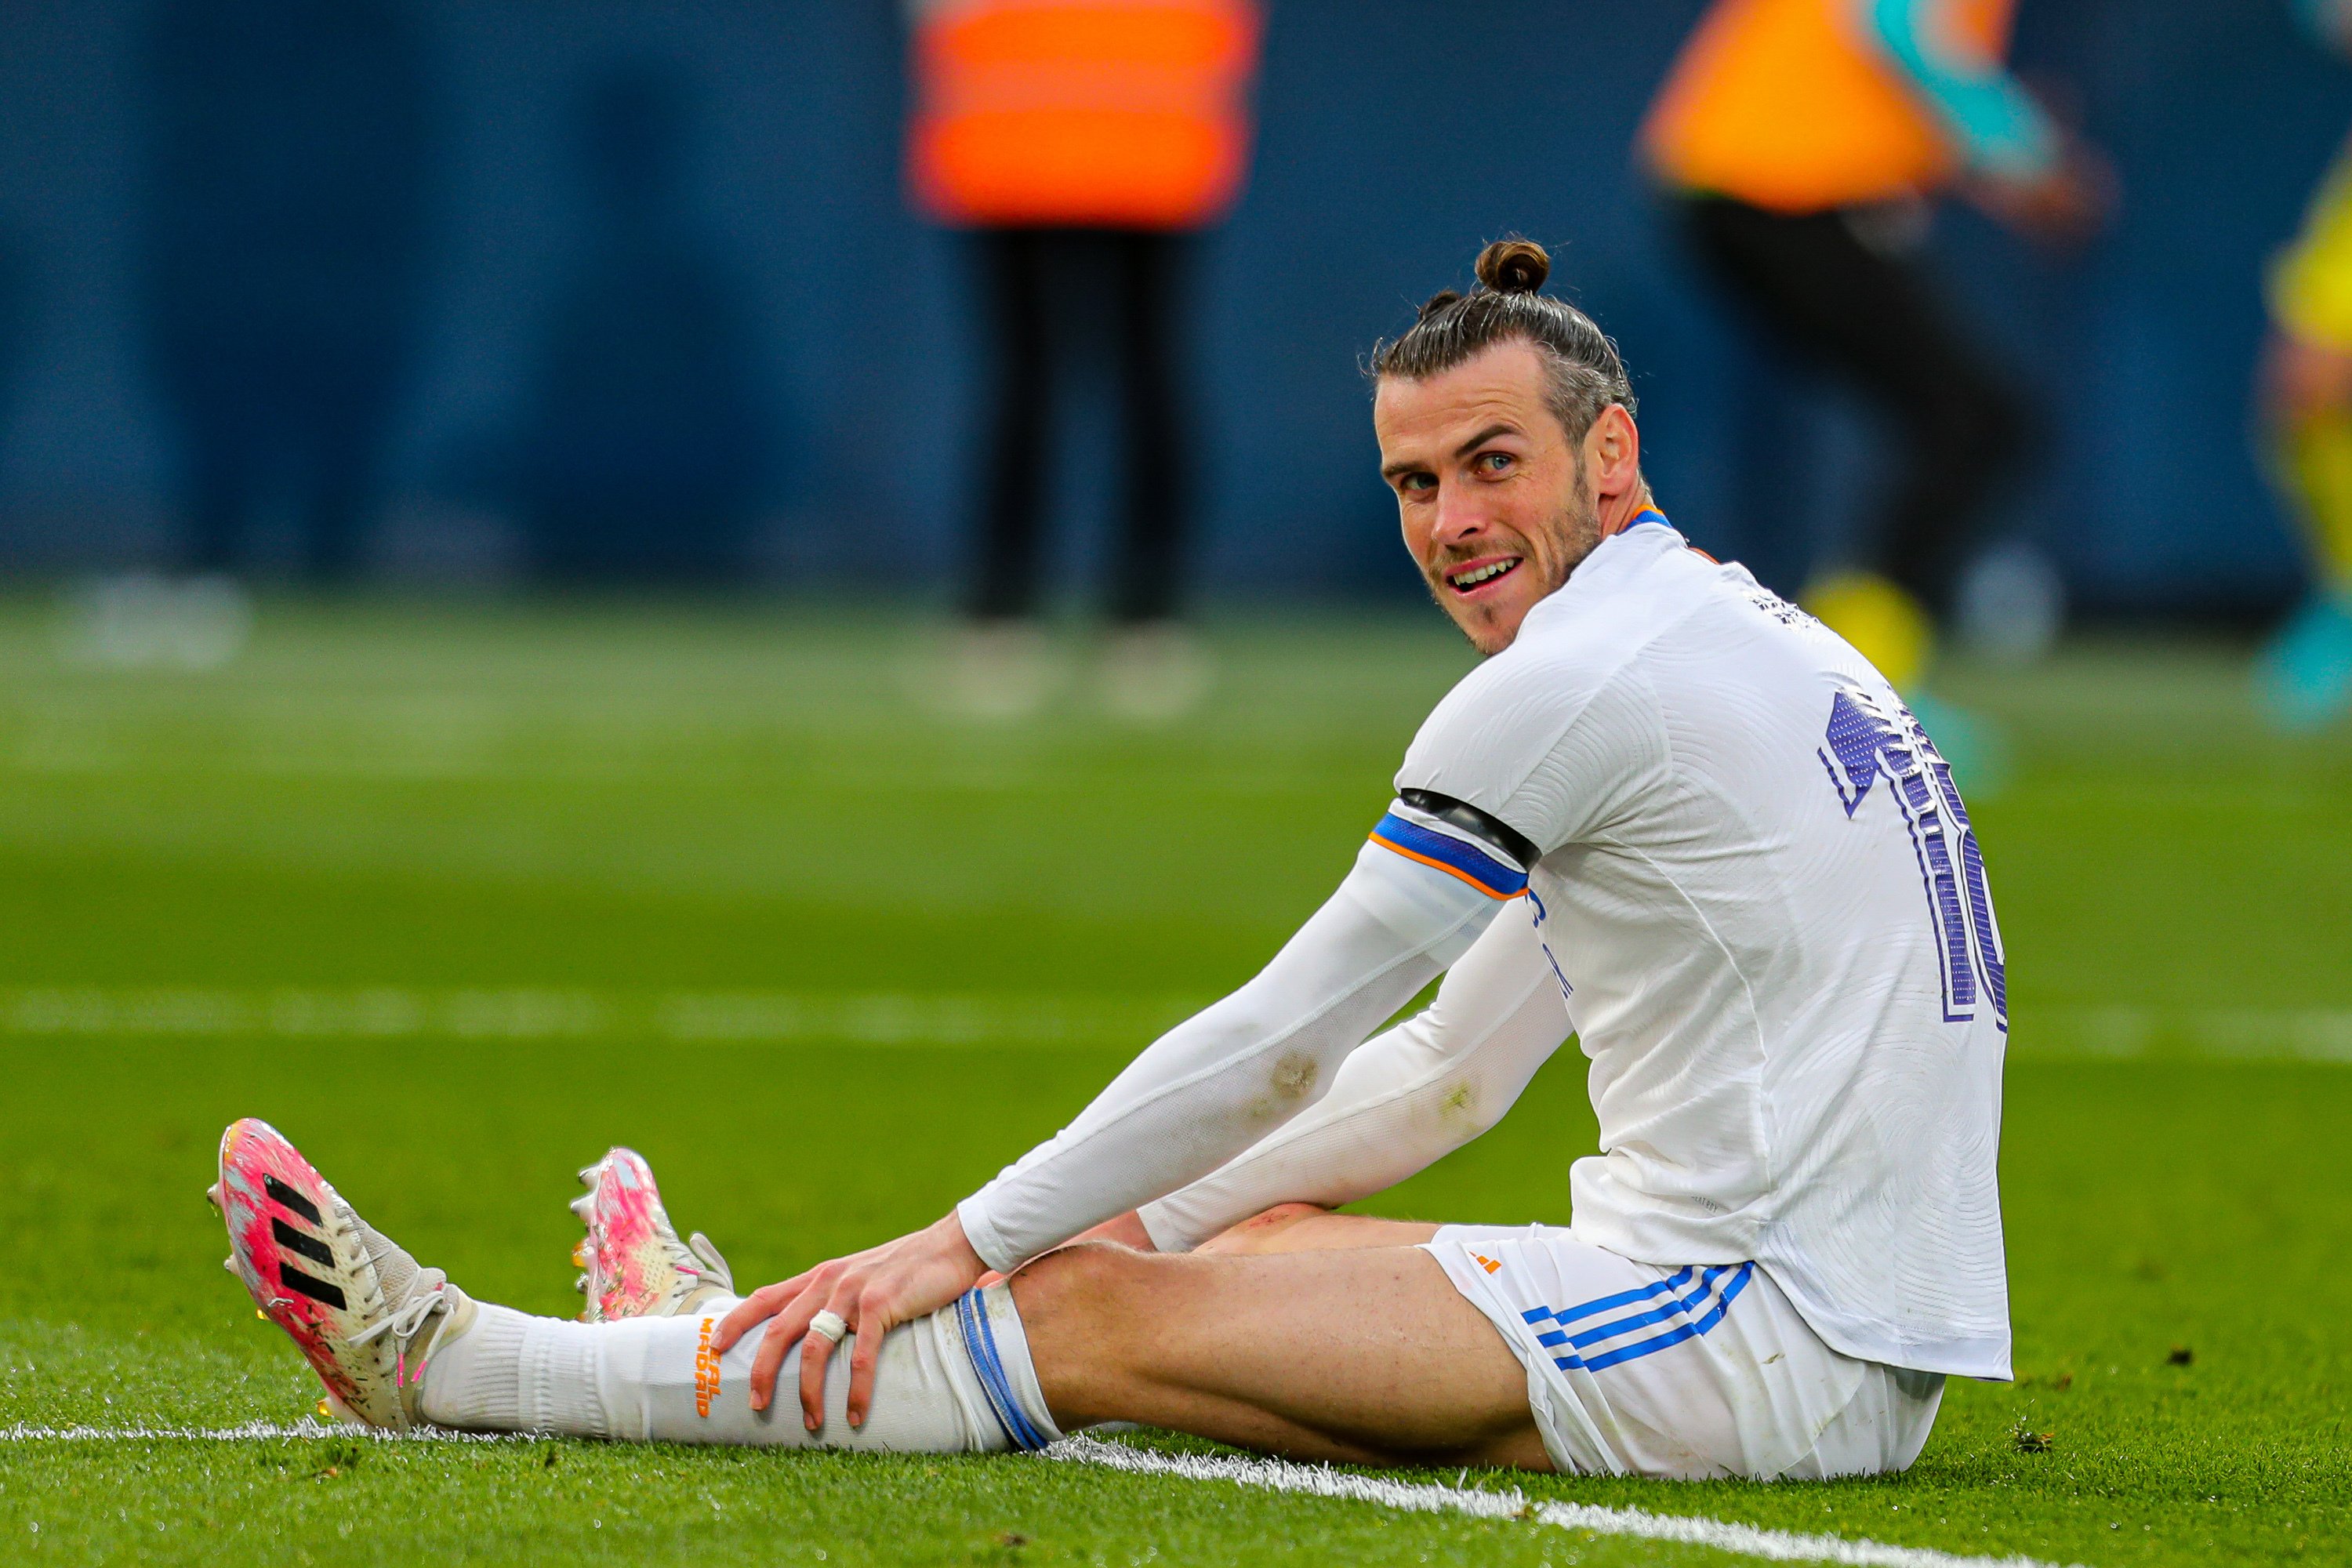 El show de Bale después de la remontada del Real Madrid ya es lo más viral del día